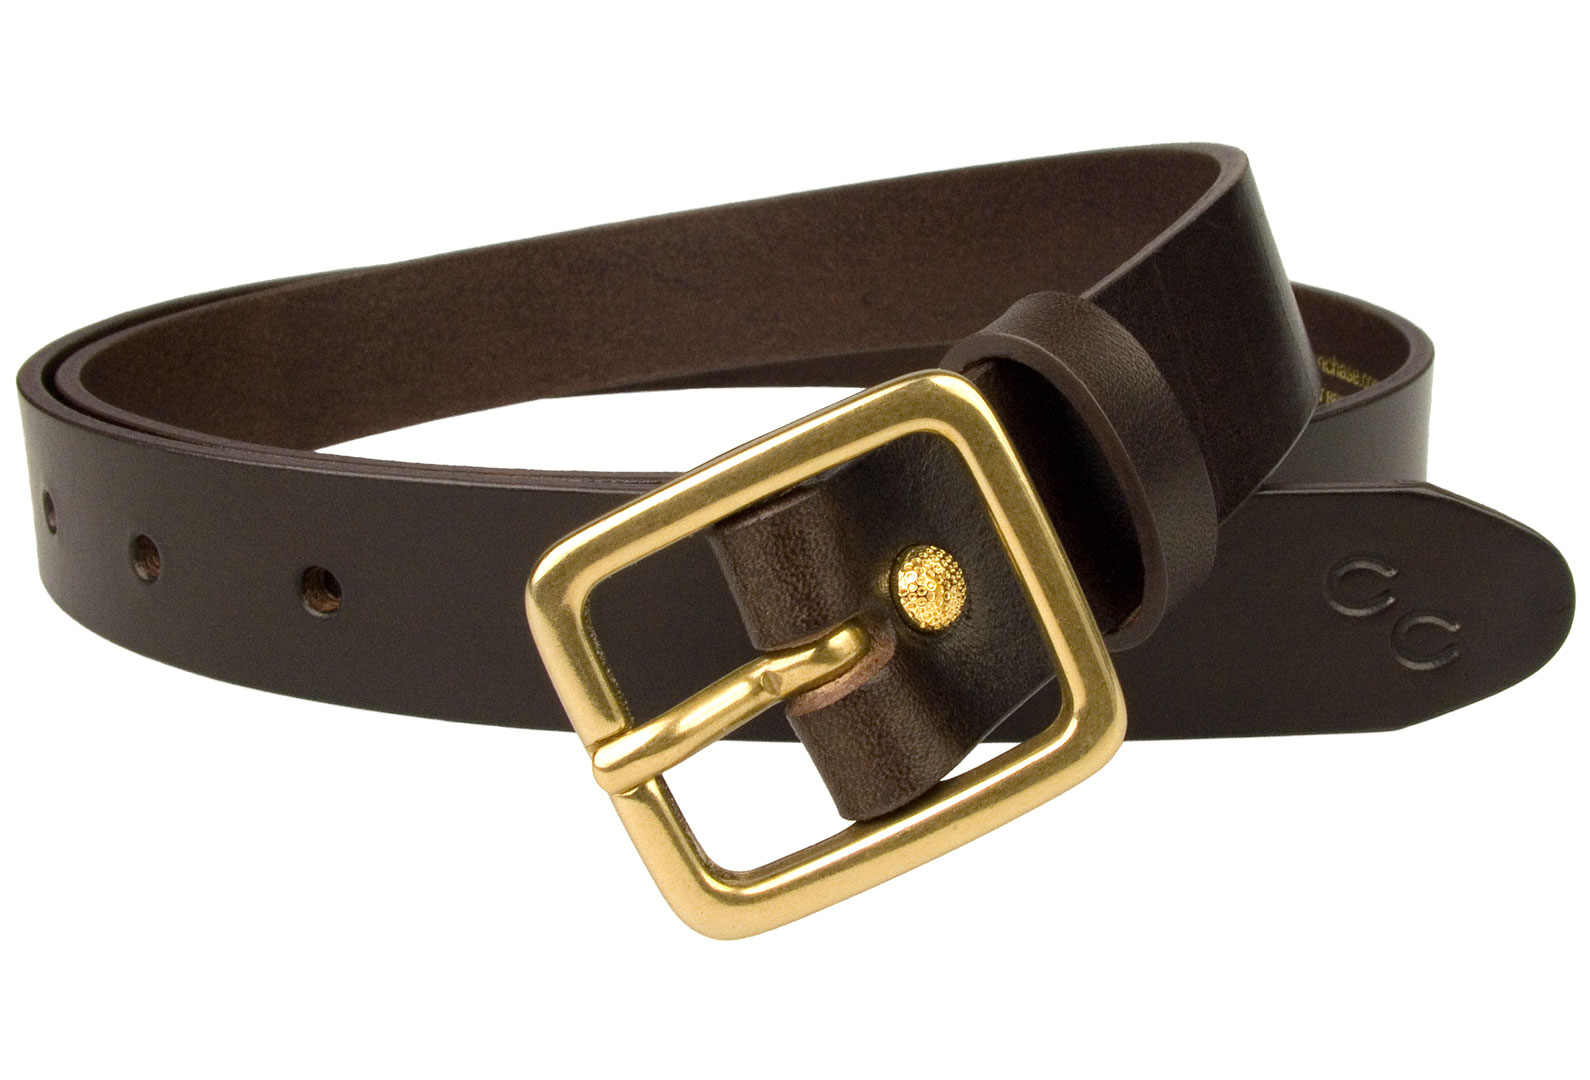 Leather Belt-Standard Natural vegetable-tanned leather belt, 1 1/2 width